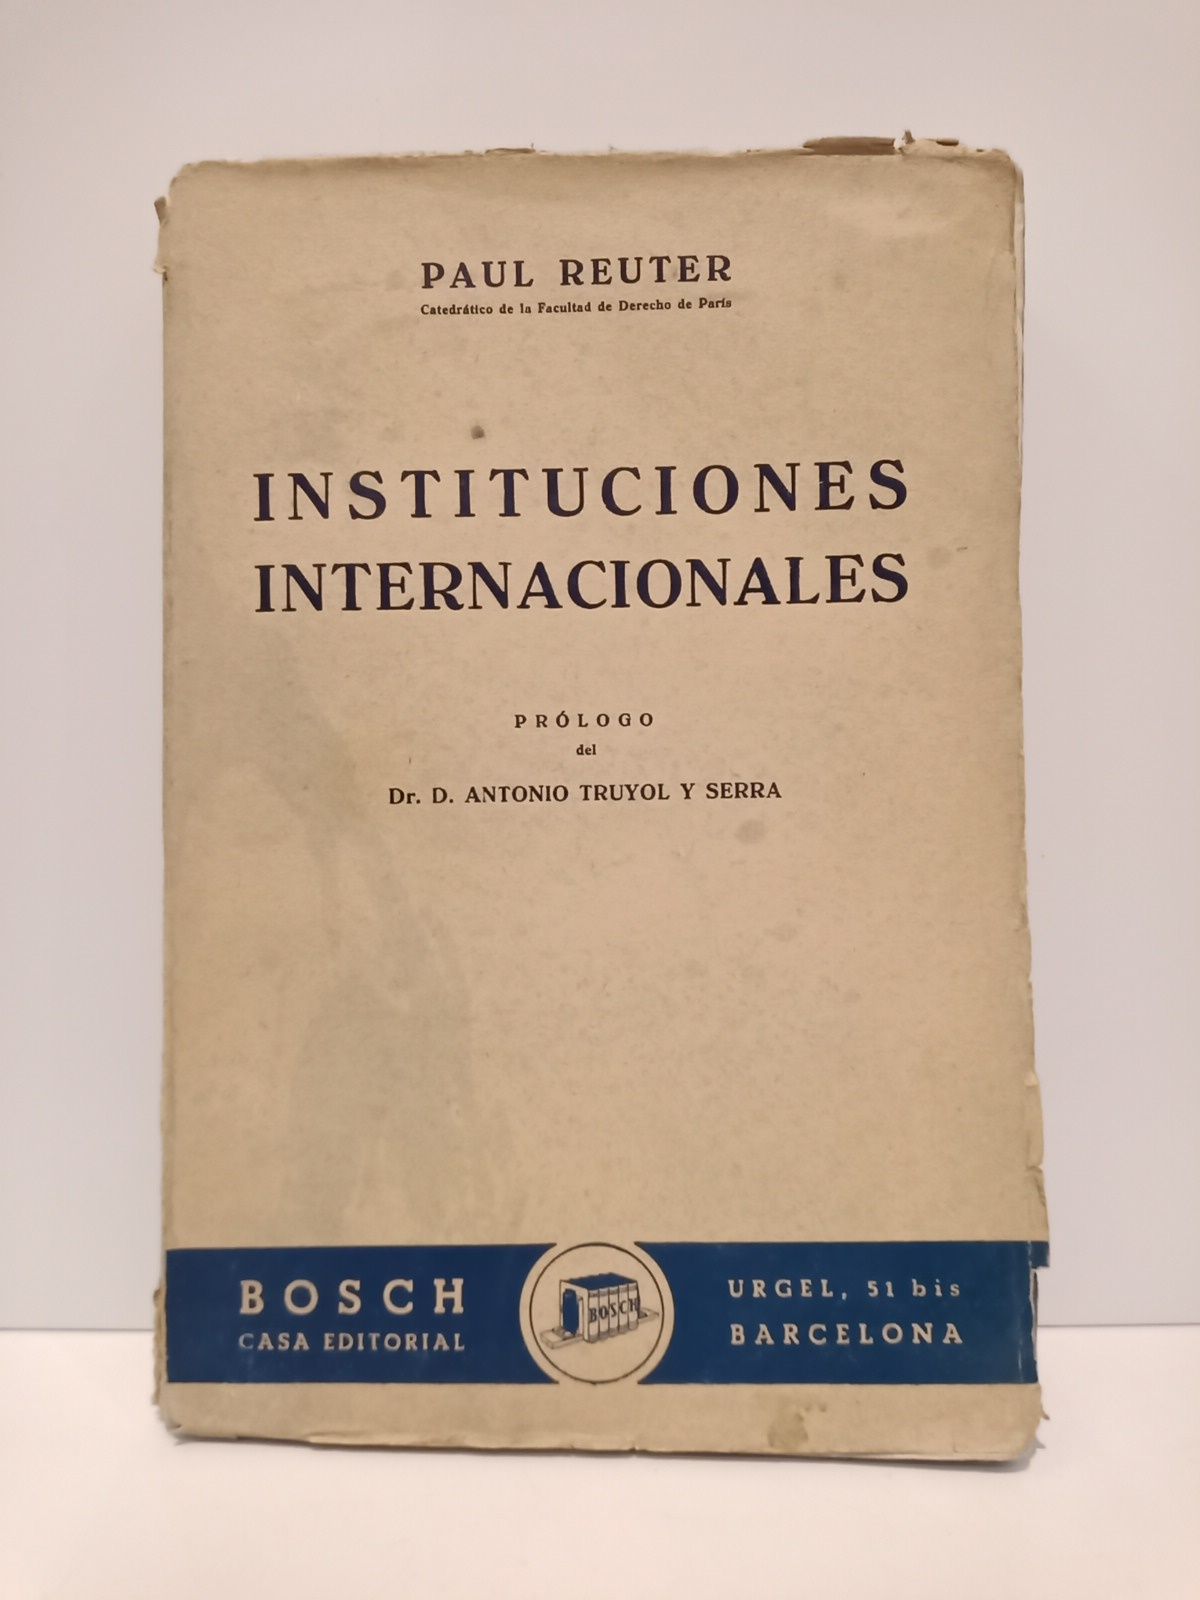 REUTER, Paul - Instituciones internacionales /  Versin espaola de Cristbal Mass Escofet; prol. de Antonio Truyol y Serra